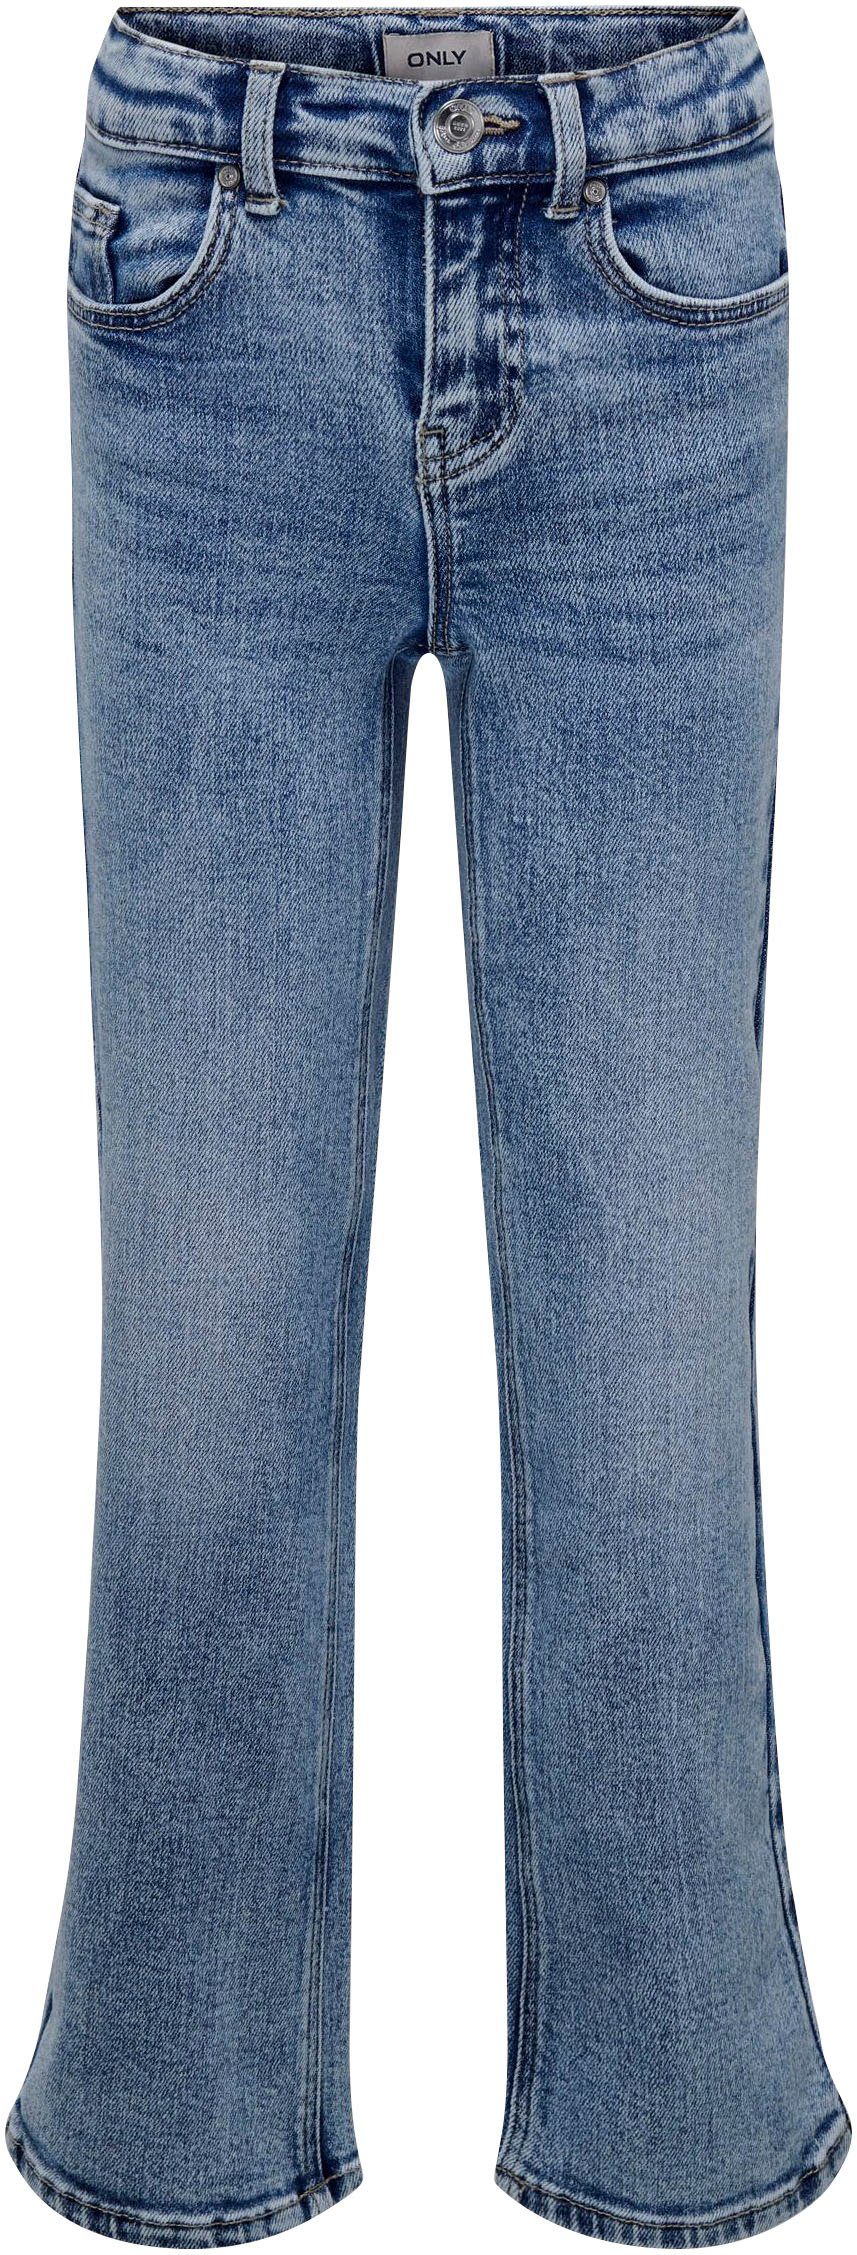 KIDS DN KOGJUICY DEST LEG WIDE 5-Pocket-Jeans ONLY